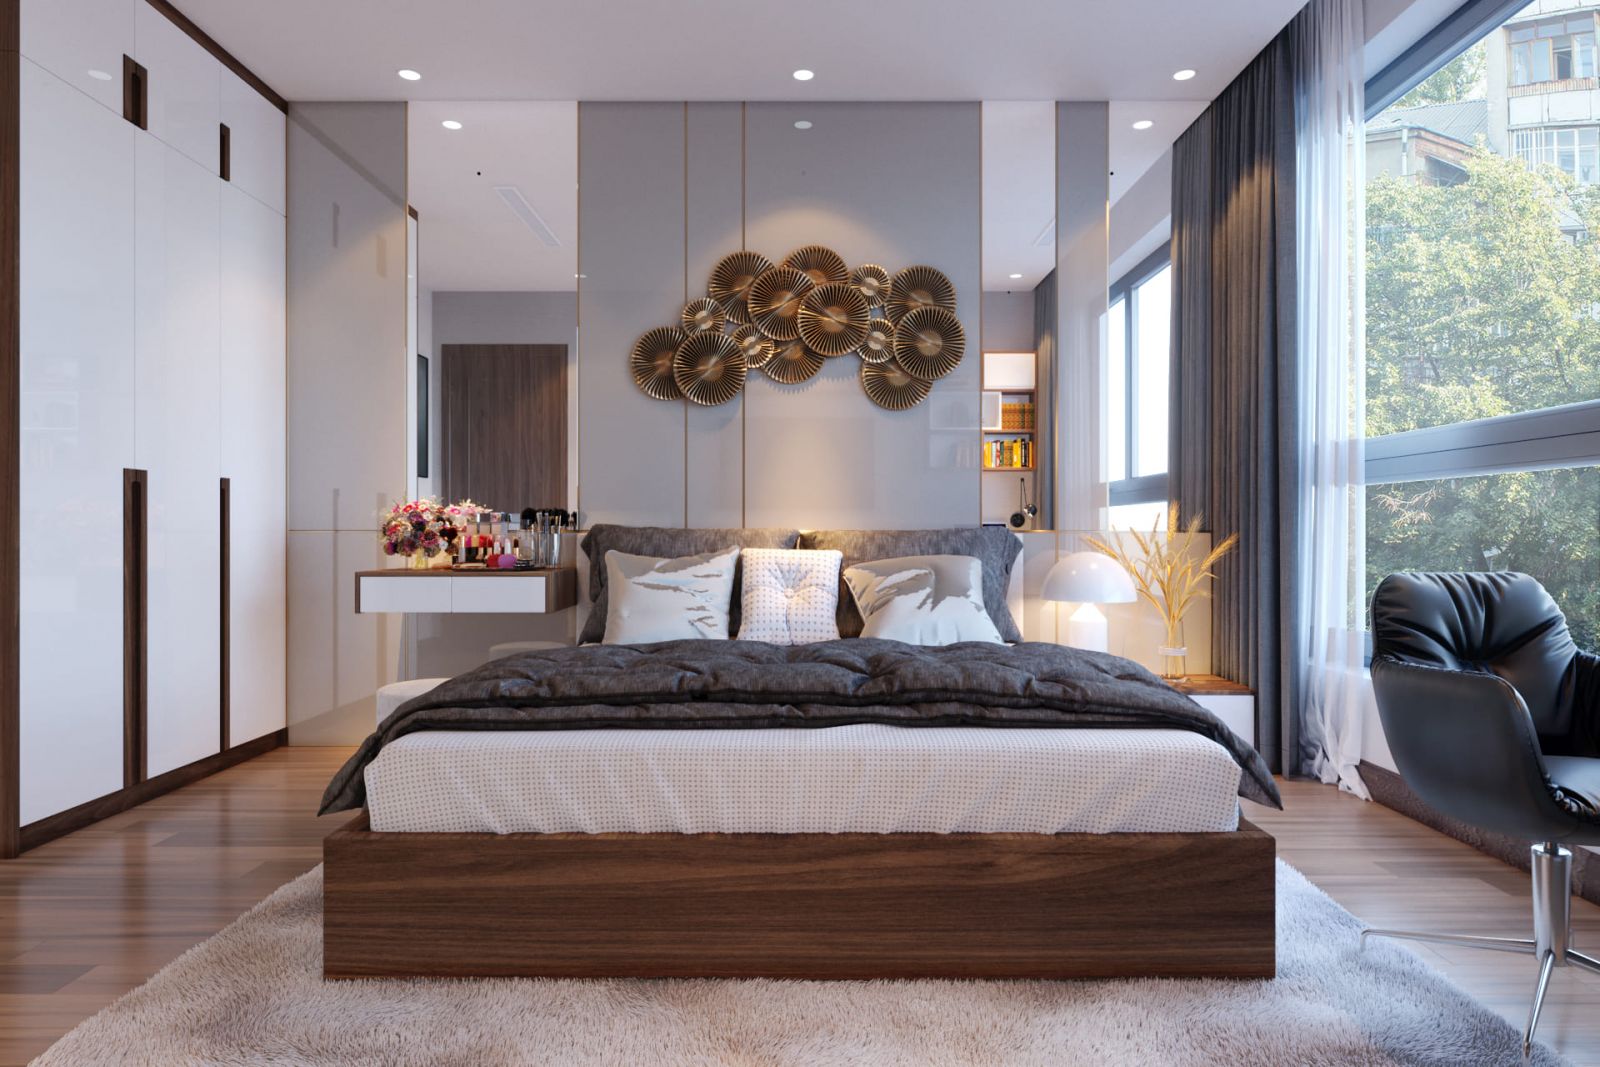 Phòng ngủ master phong cách tân cổ điển nhẹ nhàng phối cùng chất hiện đại sang trọng. Với cửa kính cường lực trong suốt, căn phòng ngập tràn ánh sáng tự nhiên.